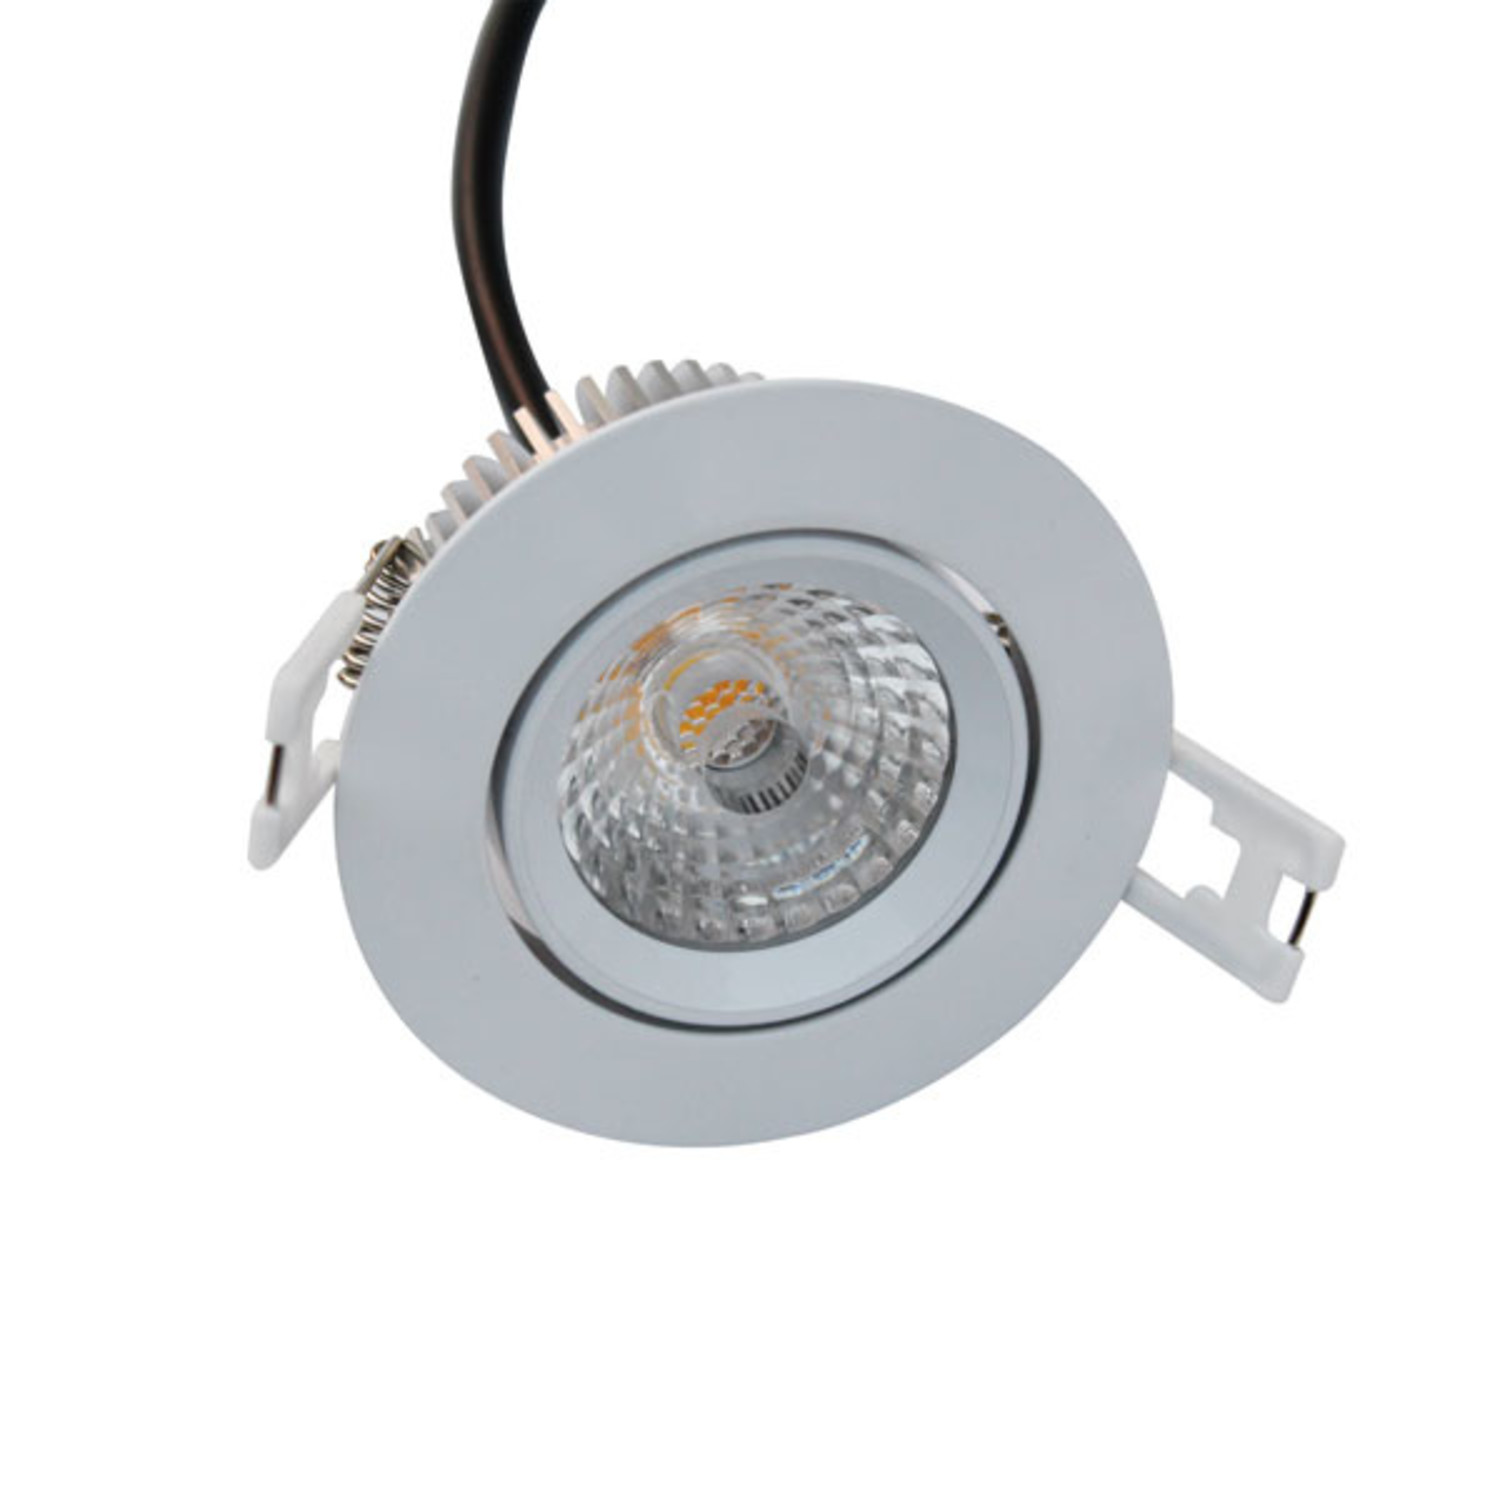 Inbouwspot LED badkamer IP44 zonder trafo 7W 230V wit of grijs - Leddepot.be